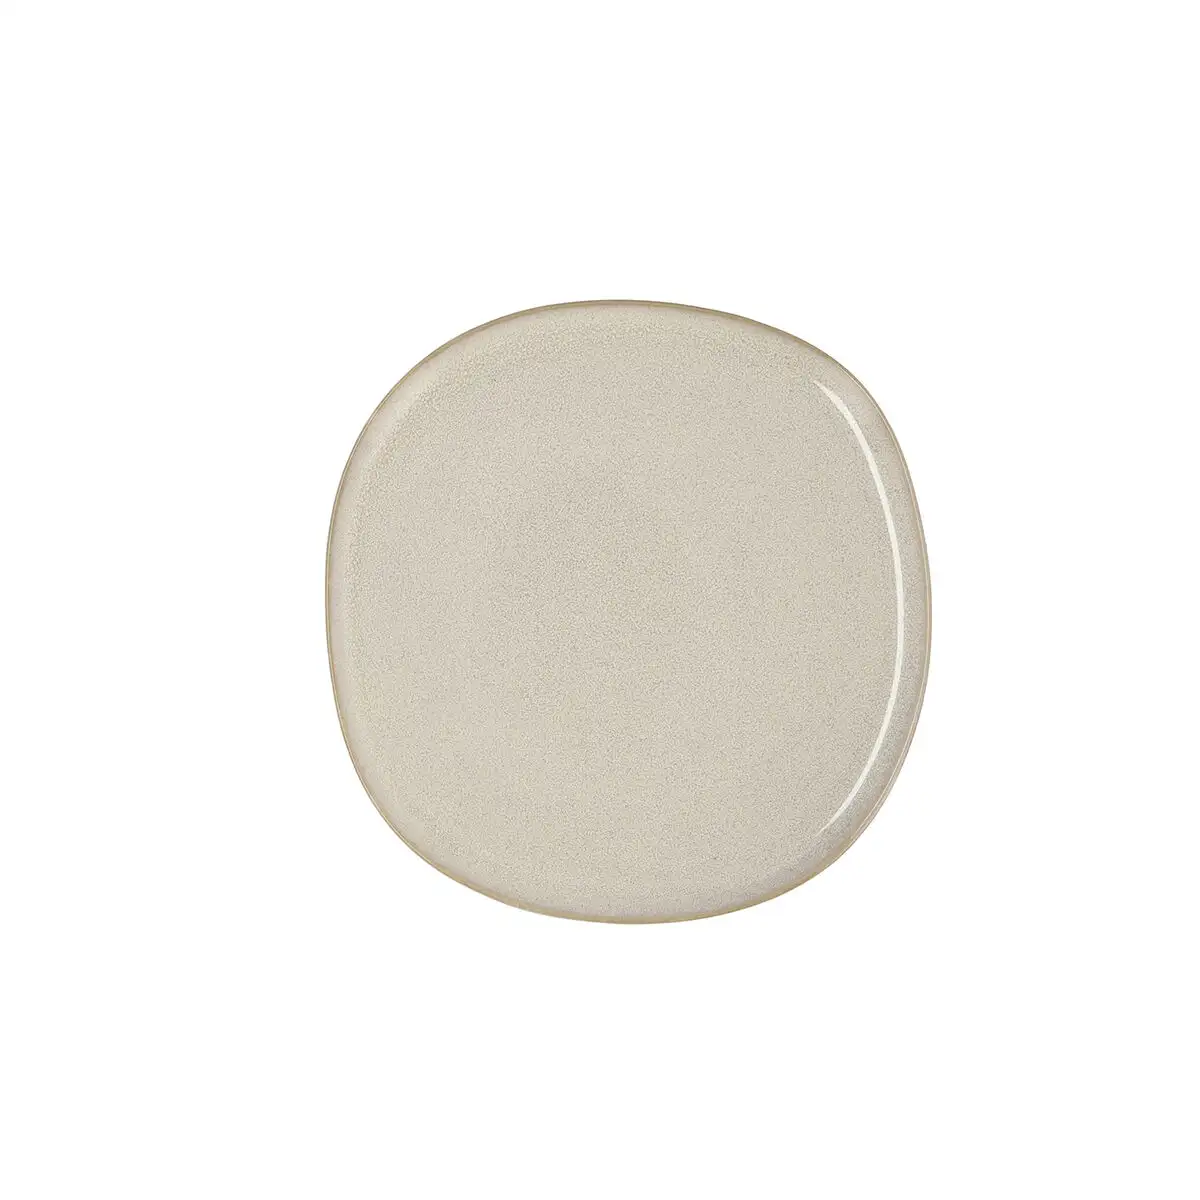 Assiette plate bidasoa ikonic ceramique blanc 20 2 x 19 7 cm pack 6x _7110. DIAYTAR SENEGAL - Votre Plateforme pour un Shopping Inspiré. Explorez nos offres variées et découvrez des articles qui stimulent votre créativité et embellissent votre vie.